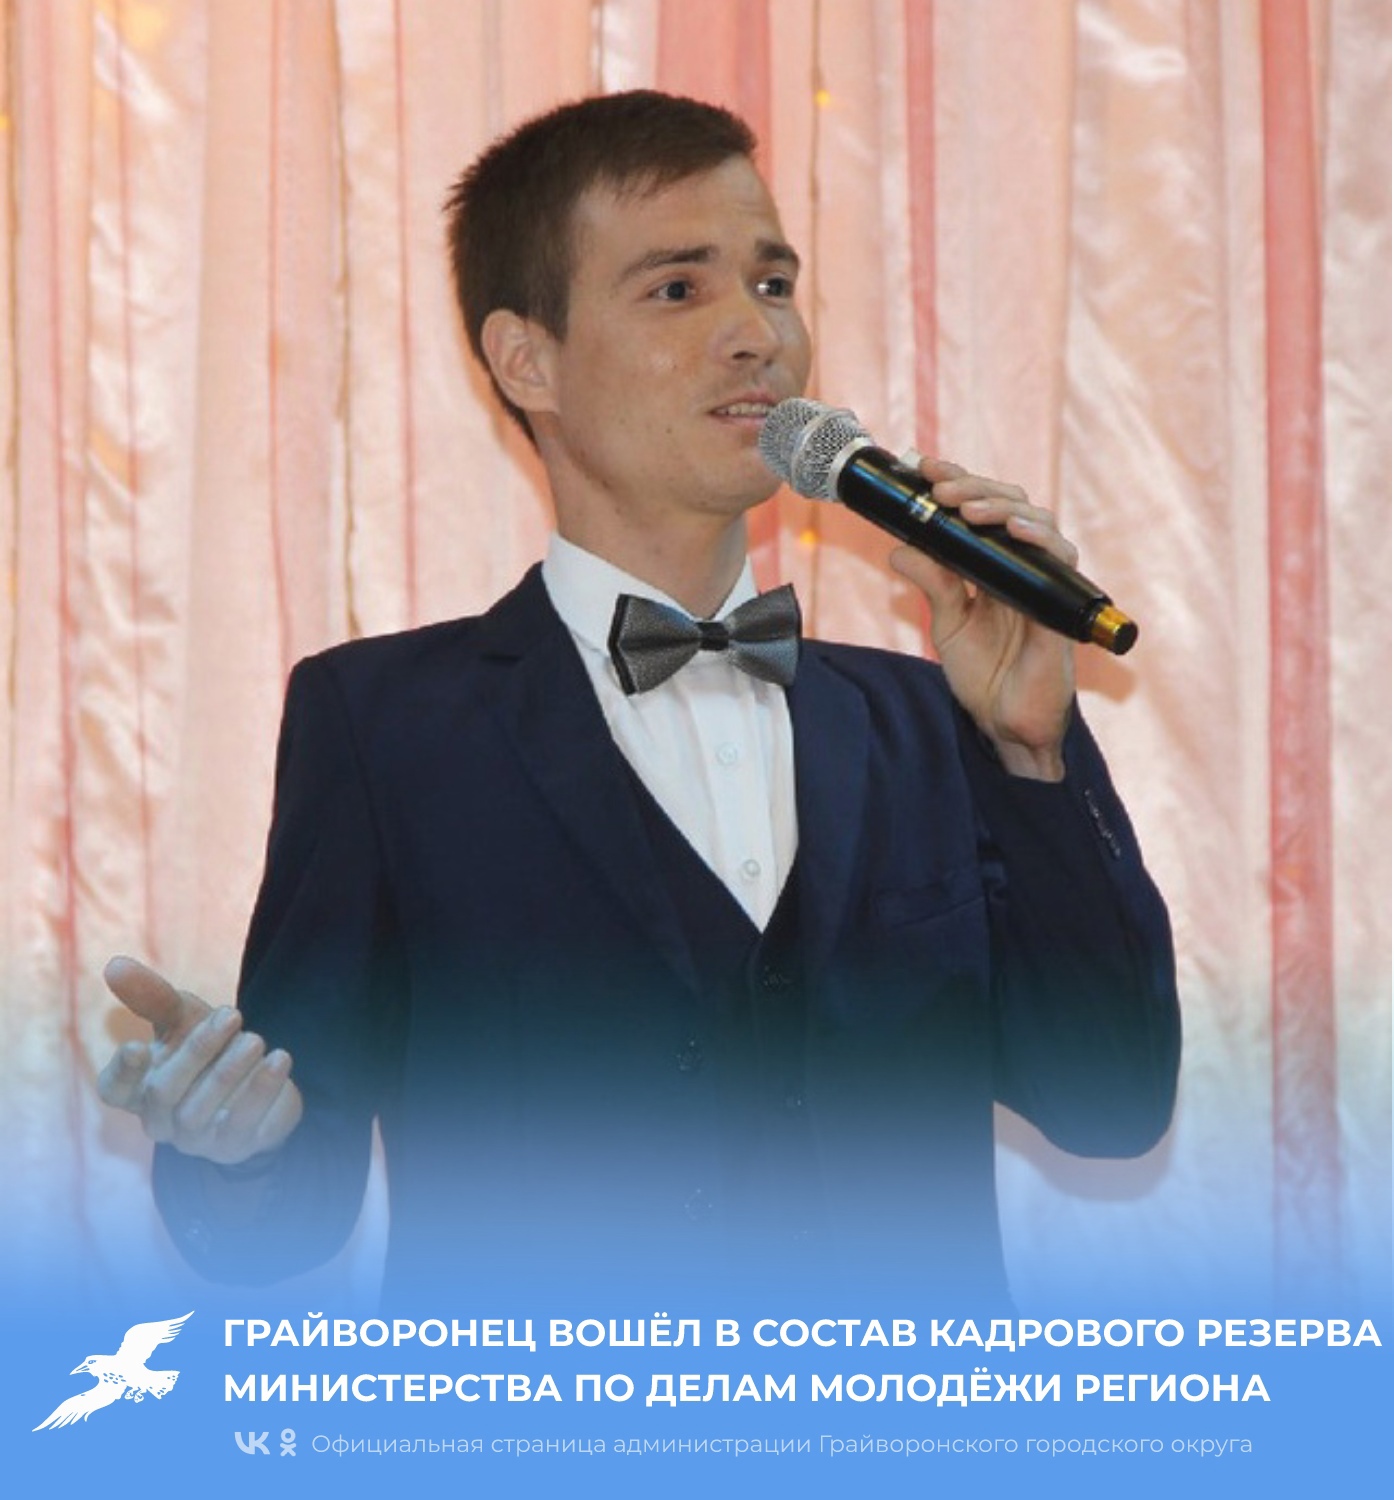 Грайворонец Святослав Назаров вошёл в состав кадрового резерва министерства по делам молодёжи Белгородской области